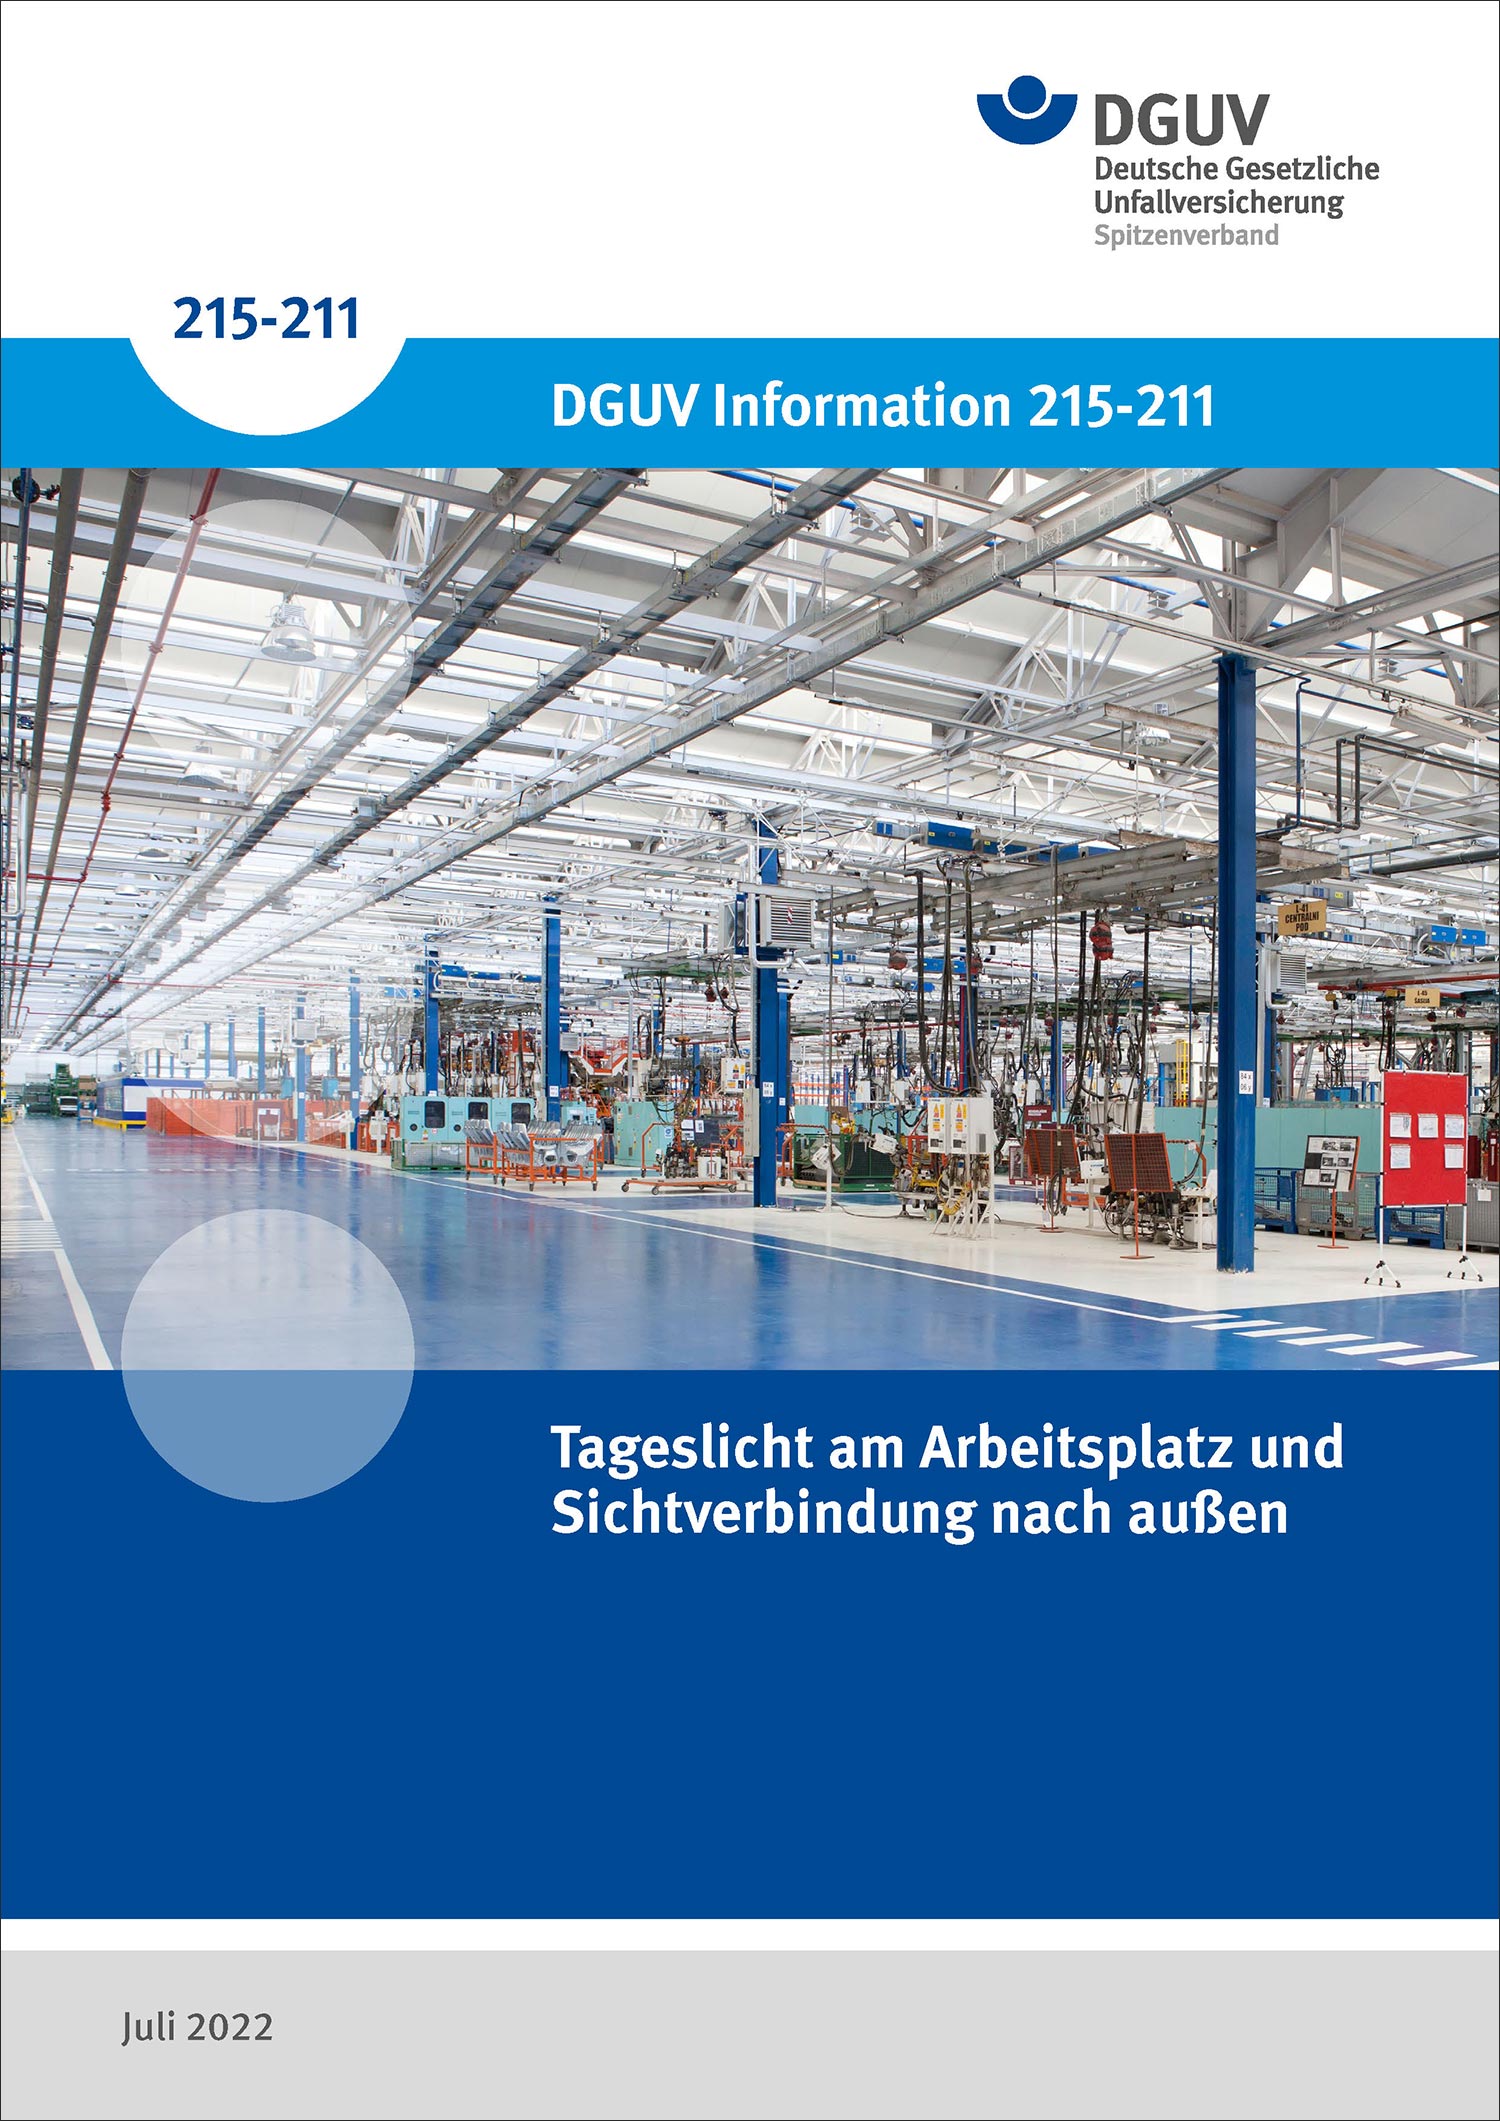 Cover der DGUV-Information 215-211 in blau mit dem Bild einer Fabrikhalle, in die von oben durch ein gläsernes Dach Tageslicht einfällt.